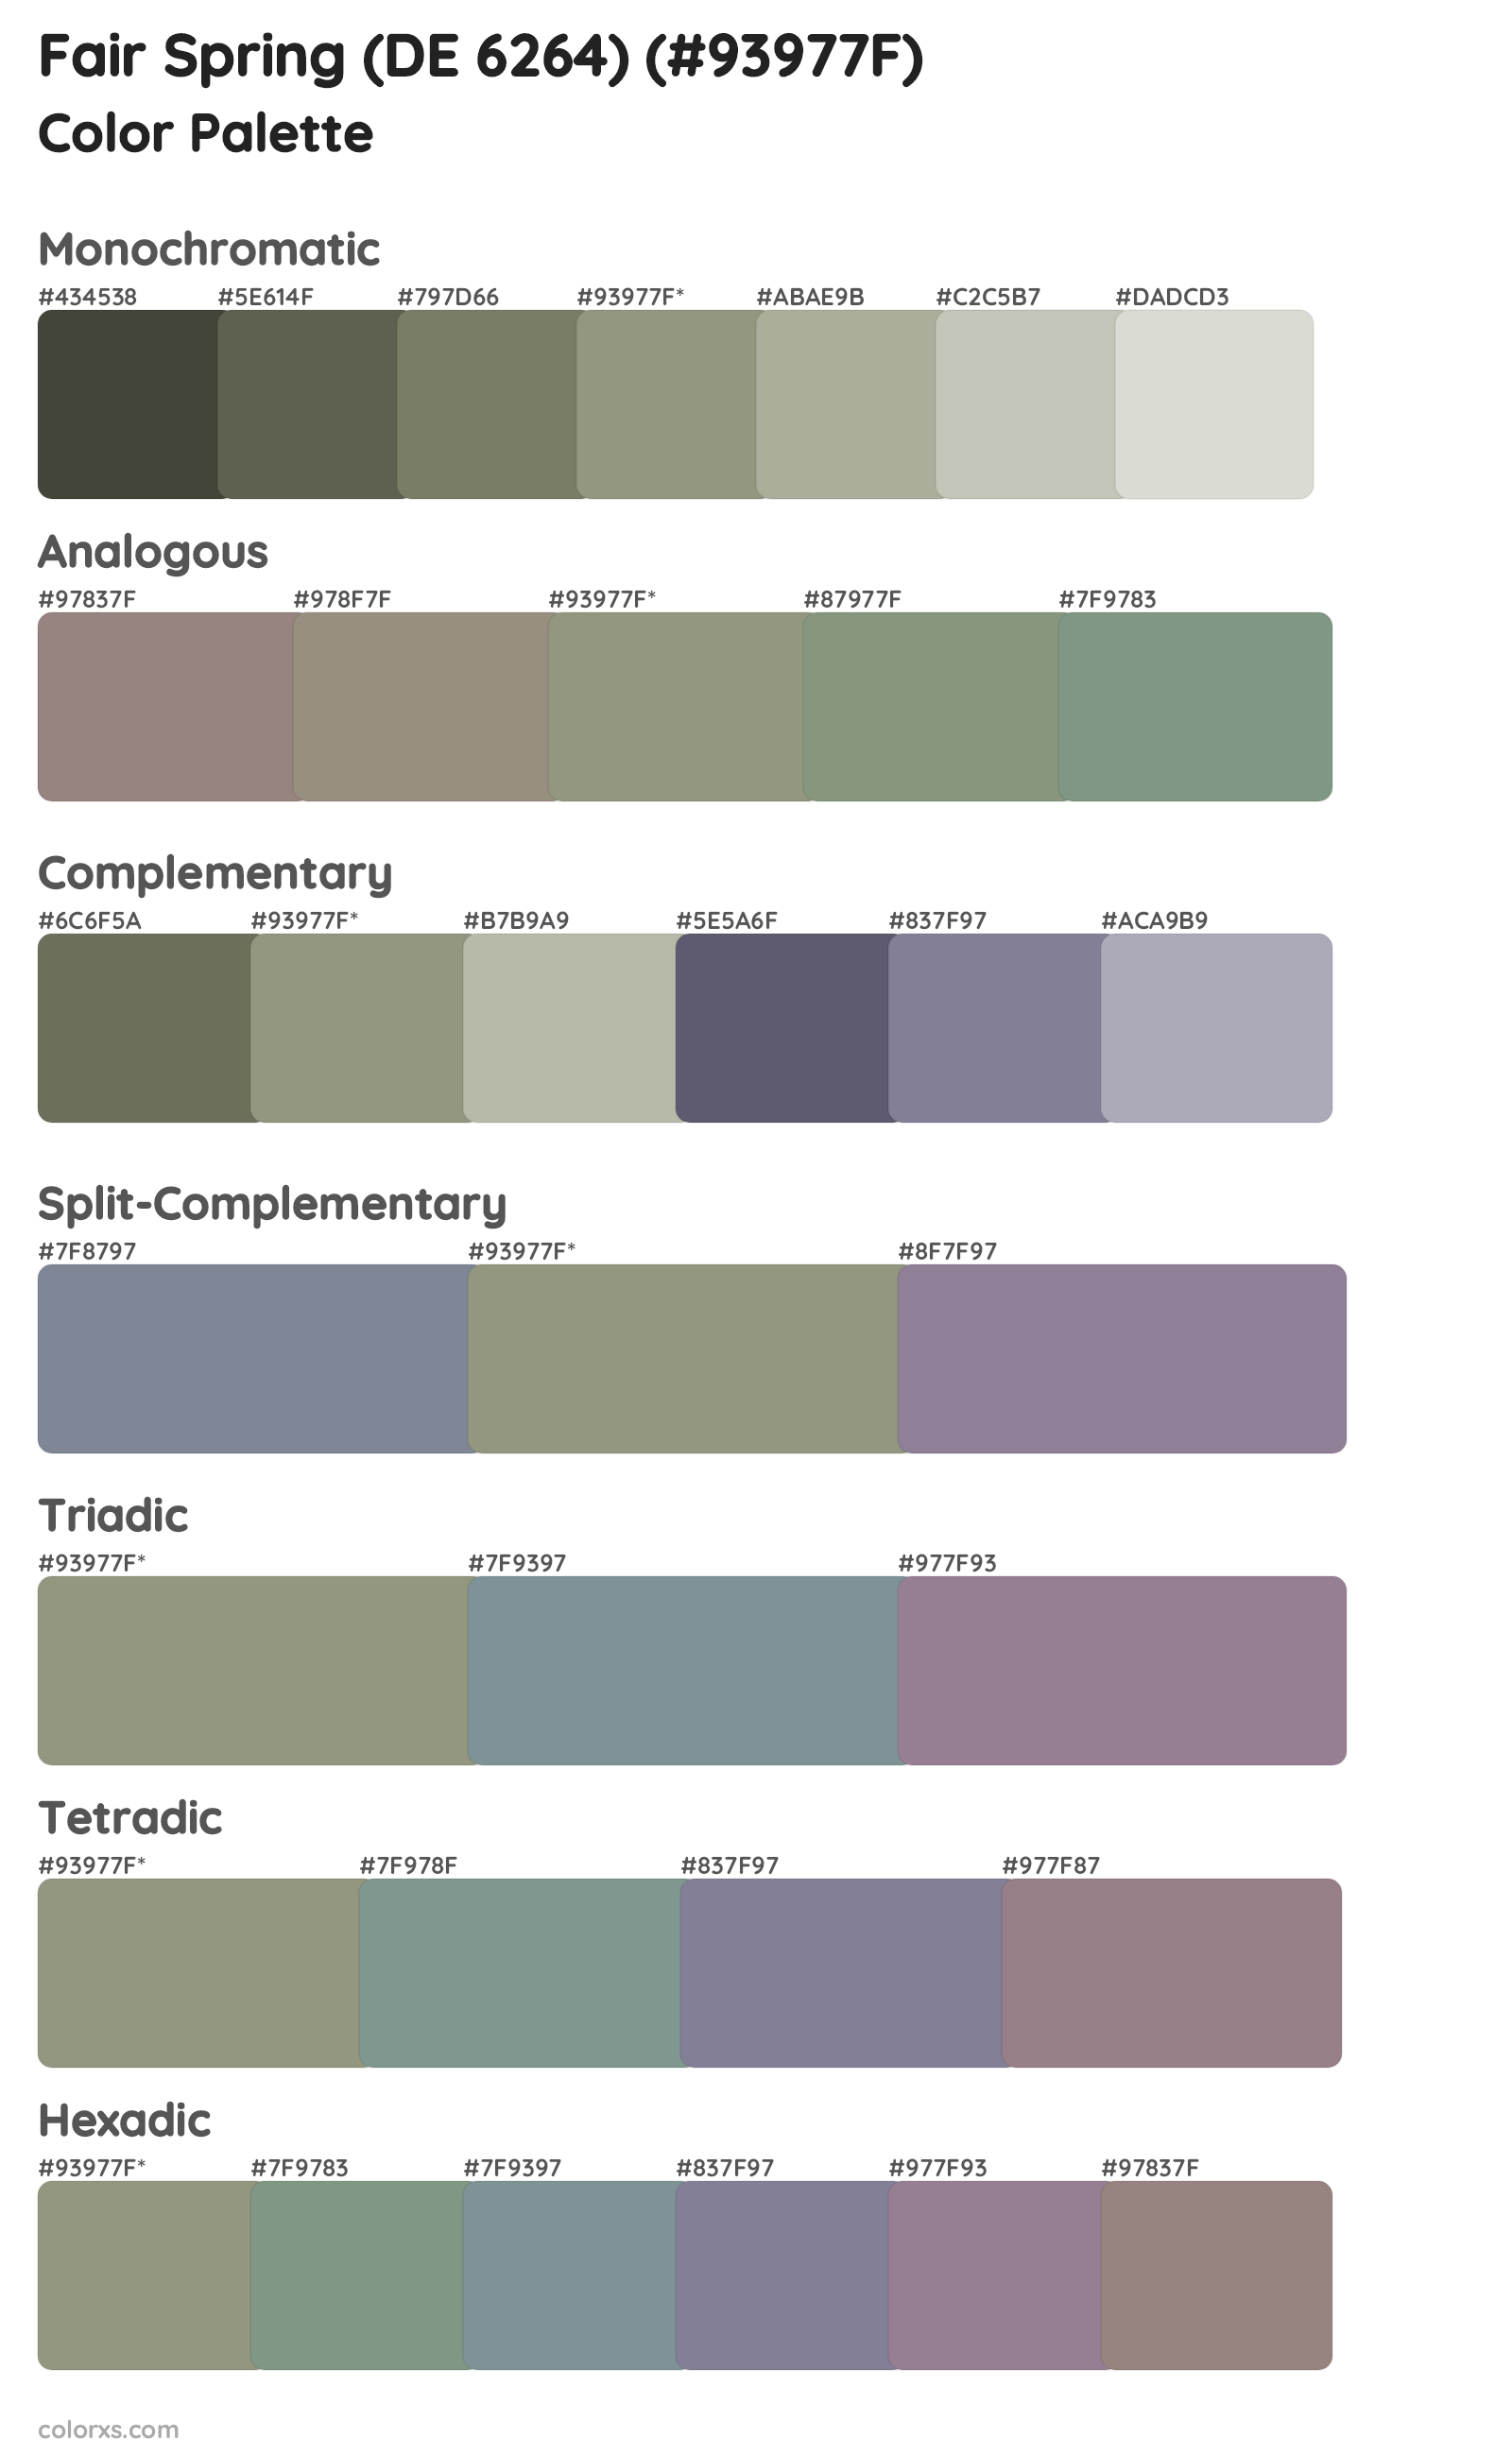 Fair Spring (DE 6264) Color Scheme Palettes